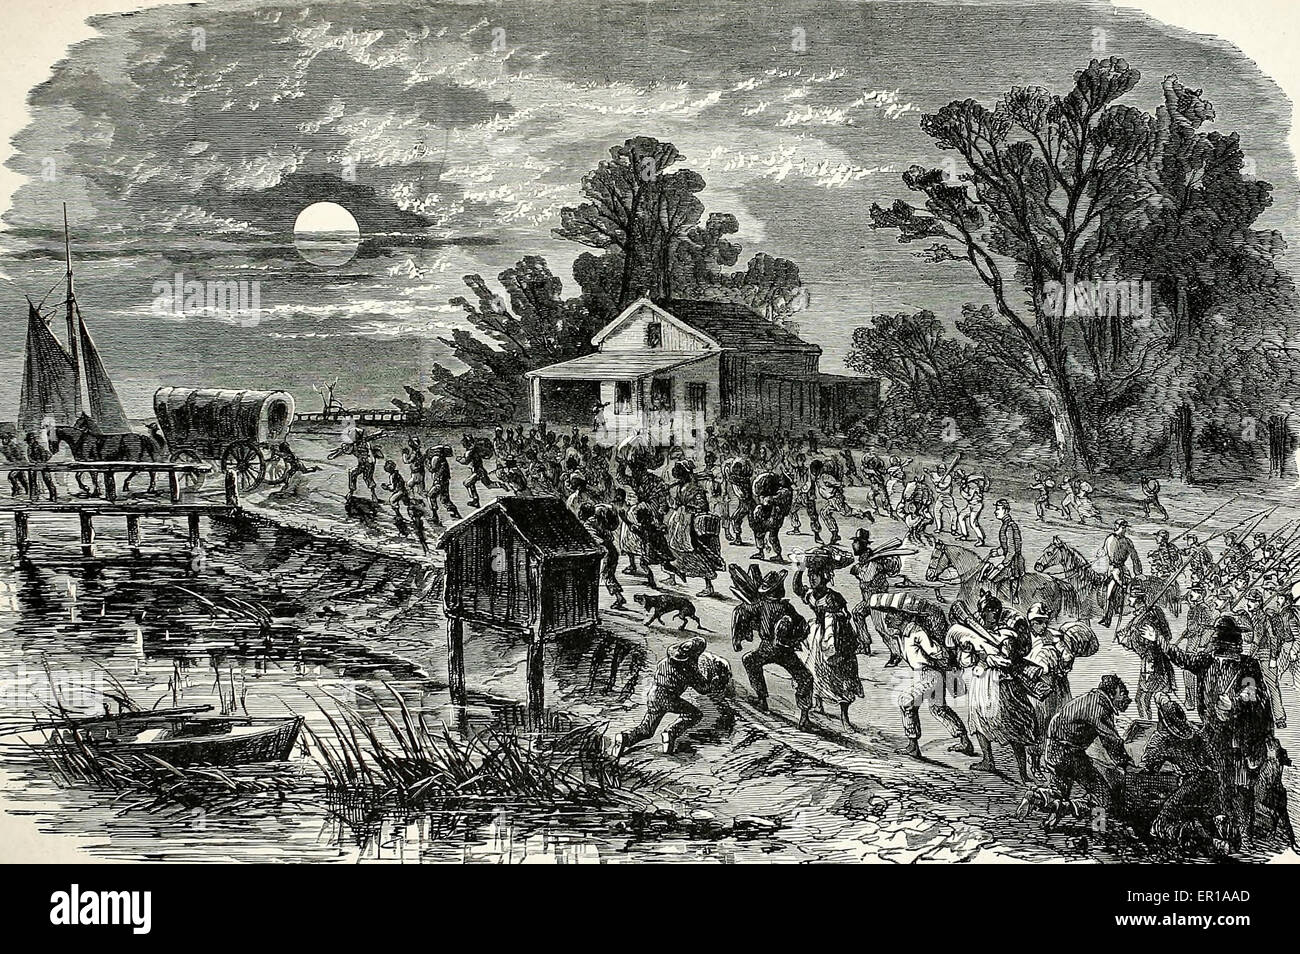 Ansturm von Sklaven nach Fort Monroe, Virginia.  Freiheit der Festung Schmuggelware des Krieges inszeniert früh USA Bürgerkrieg Stockfoto